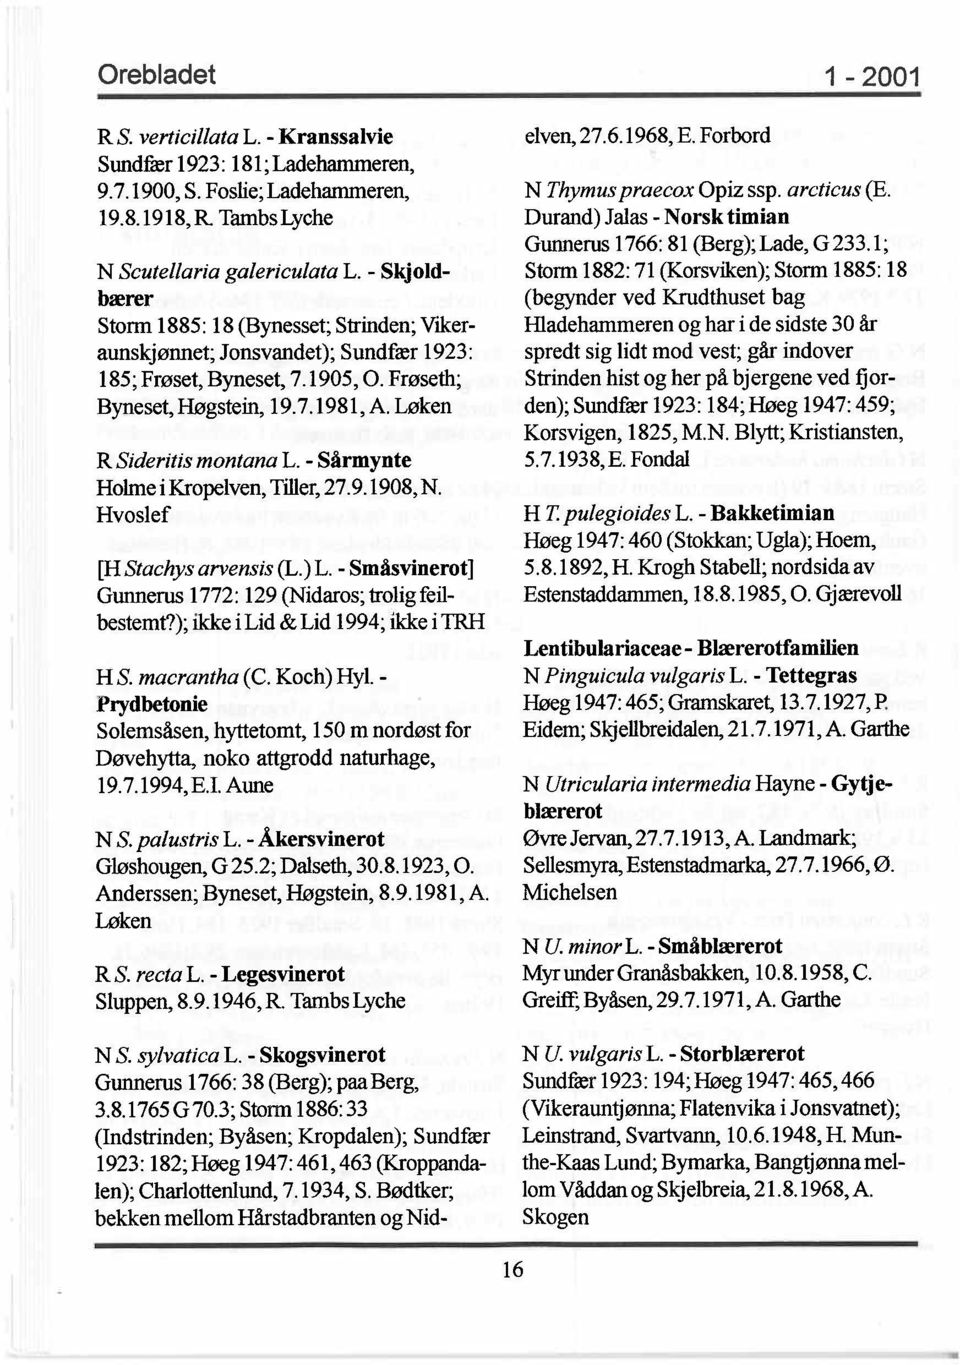 - Sårmynte Holme i Kropelven, Tiller, 27.9.1908, N. Hvoslef [H Stachys arvensis (L.) L. - Småsvinerot ] Gunnerus 1772: 129 (Nidaros; trolig feilbestemt?); ikke i Lid & Lid 1994; ikke i 1RH H S.